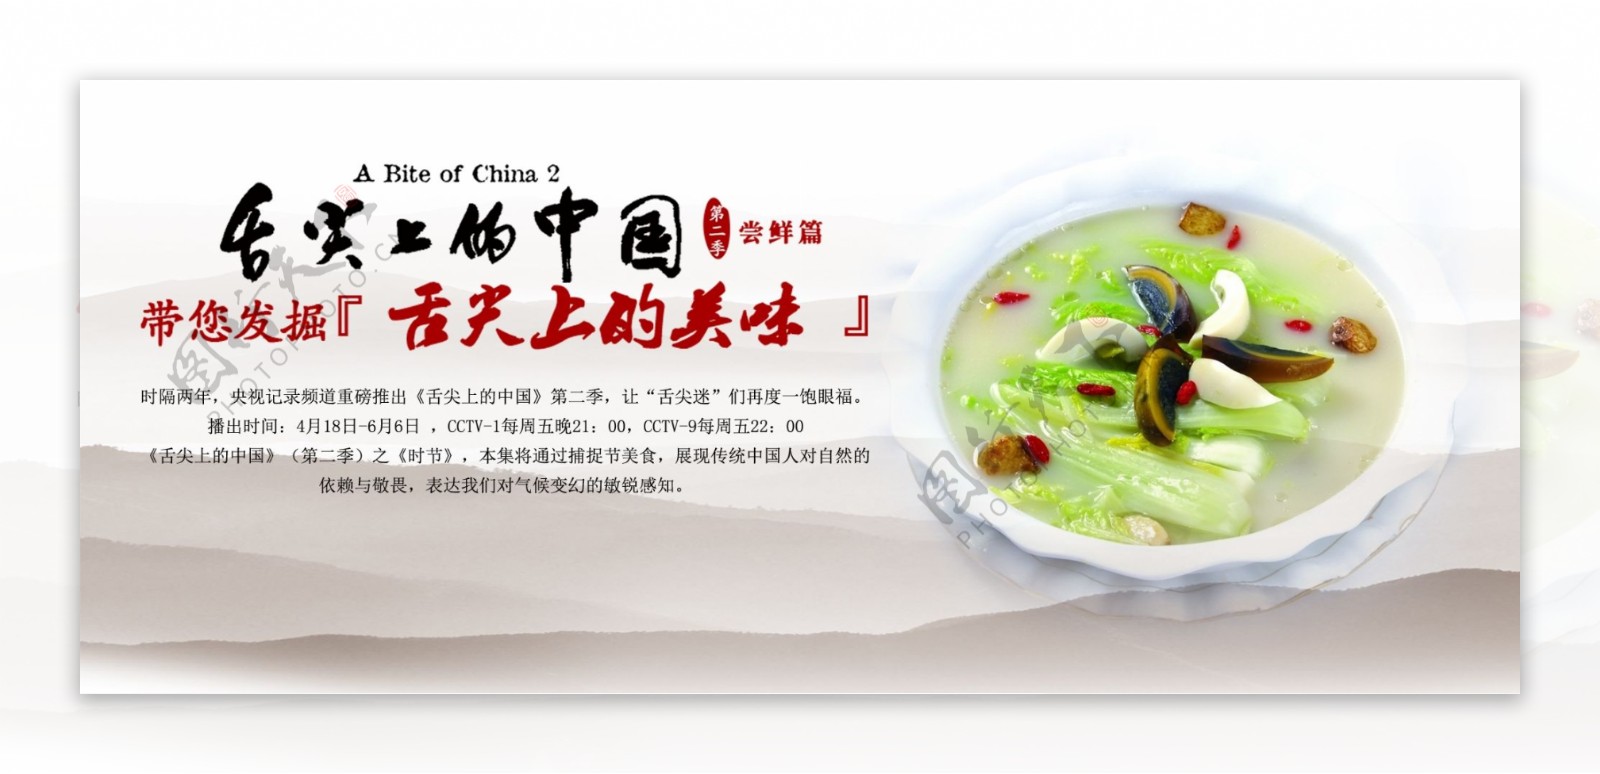 舌尖上的中国带您发掘舌尖上的美食